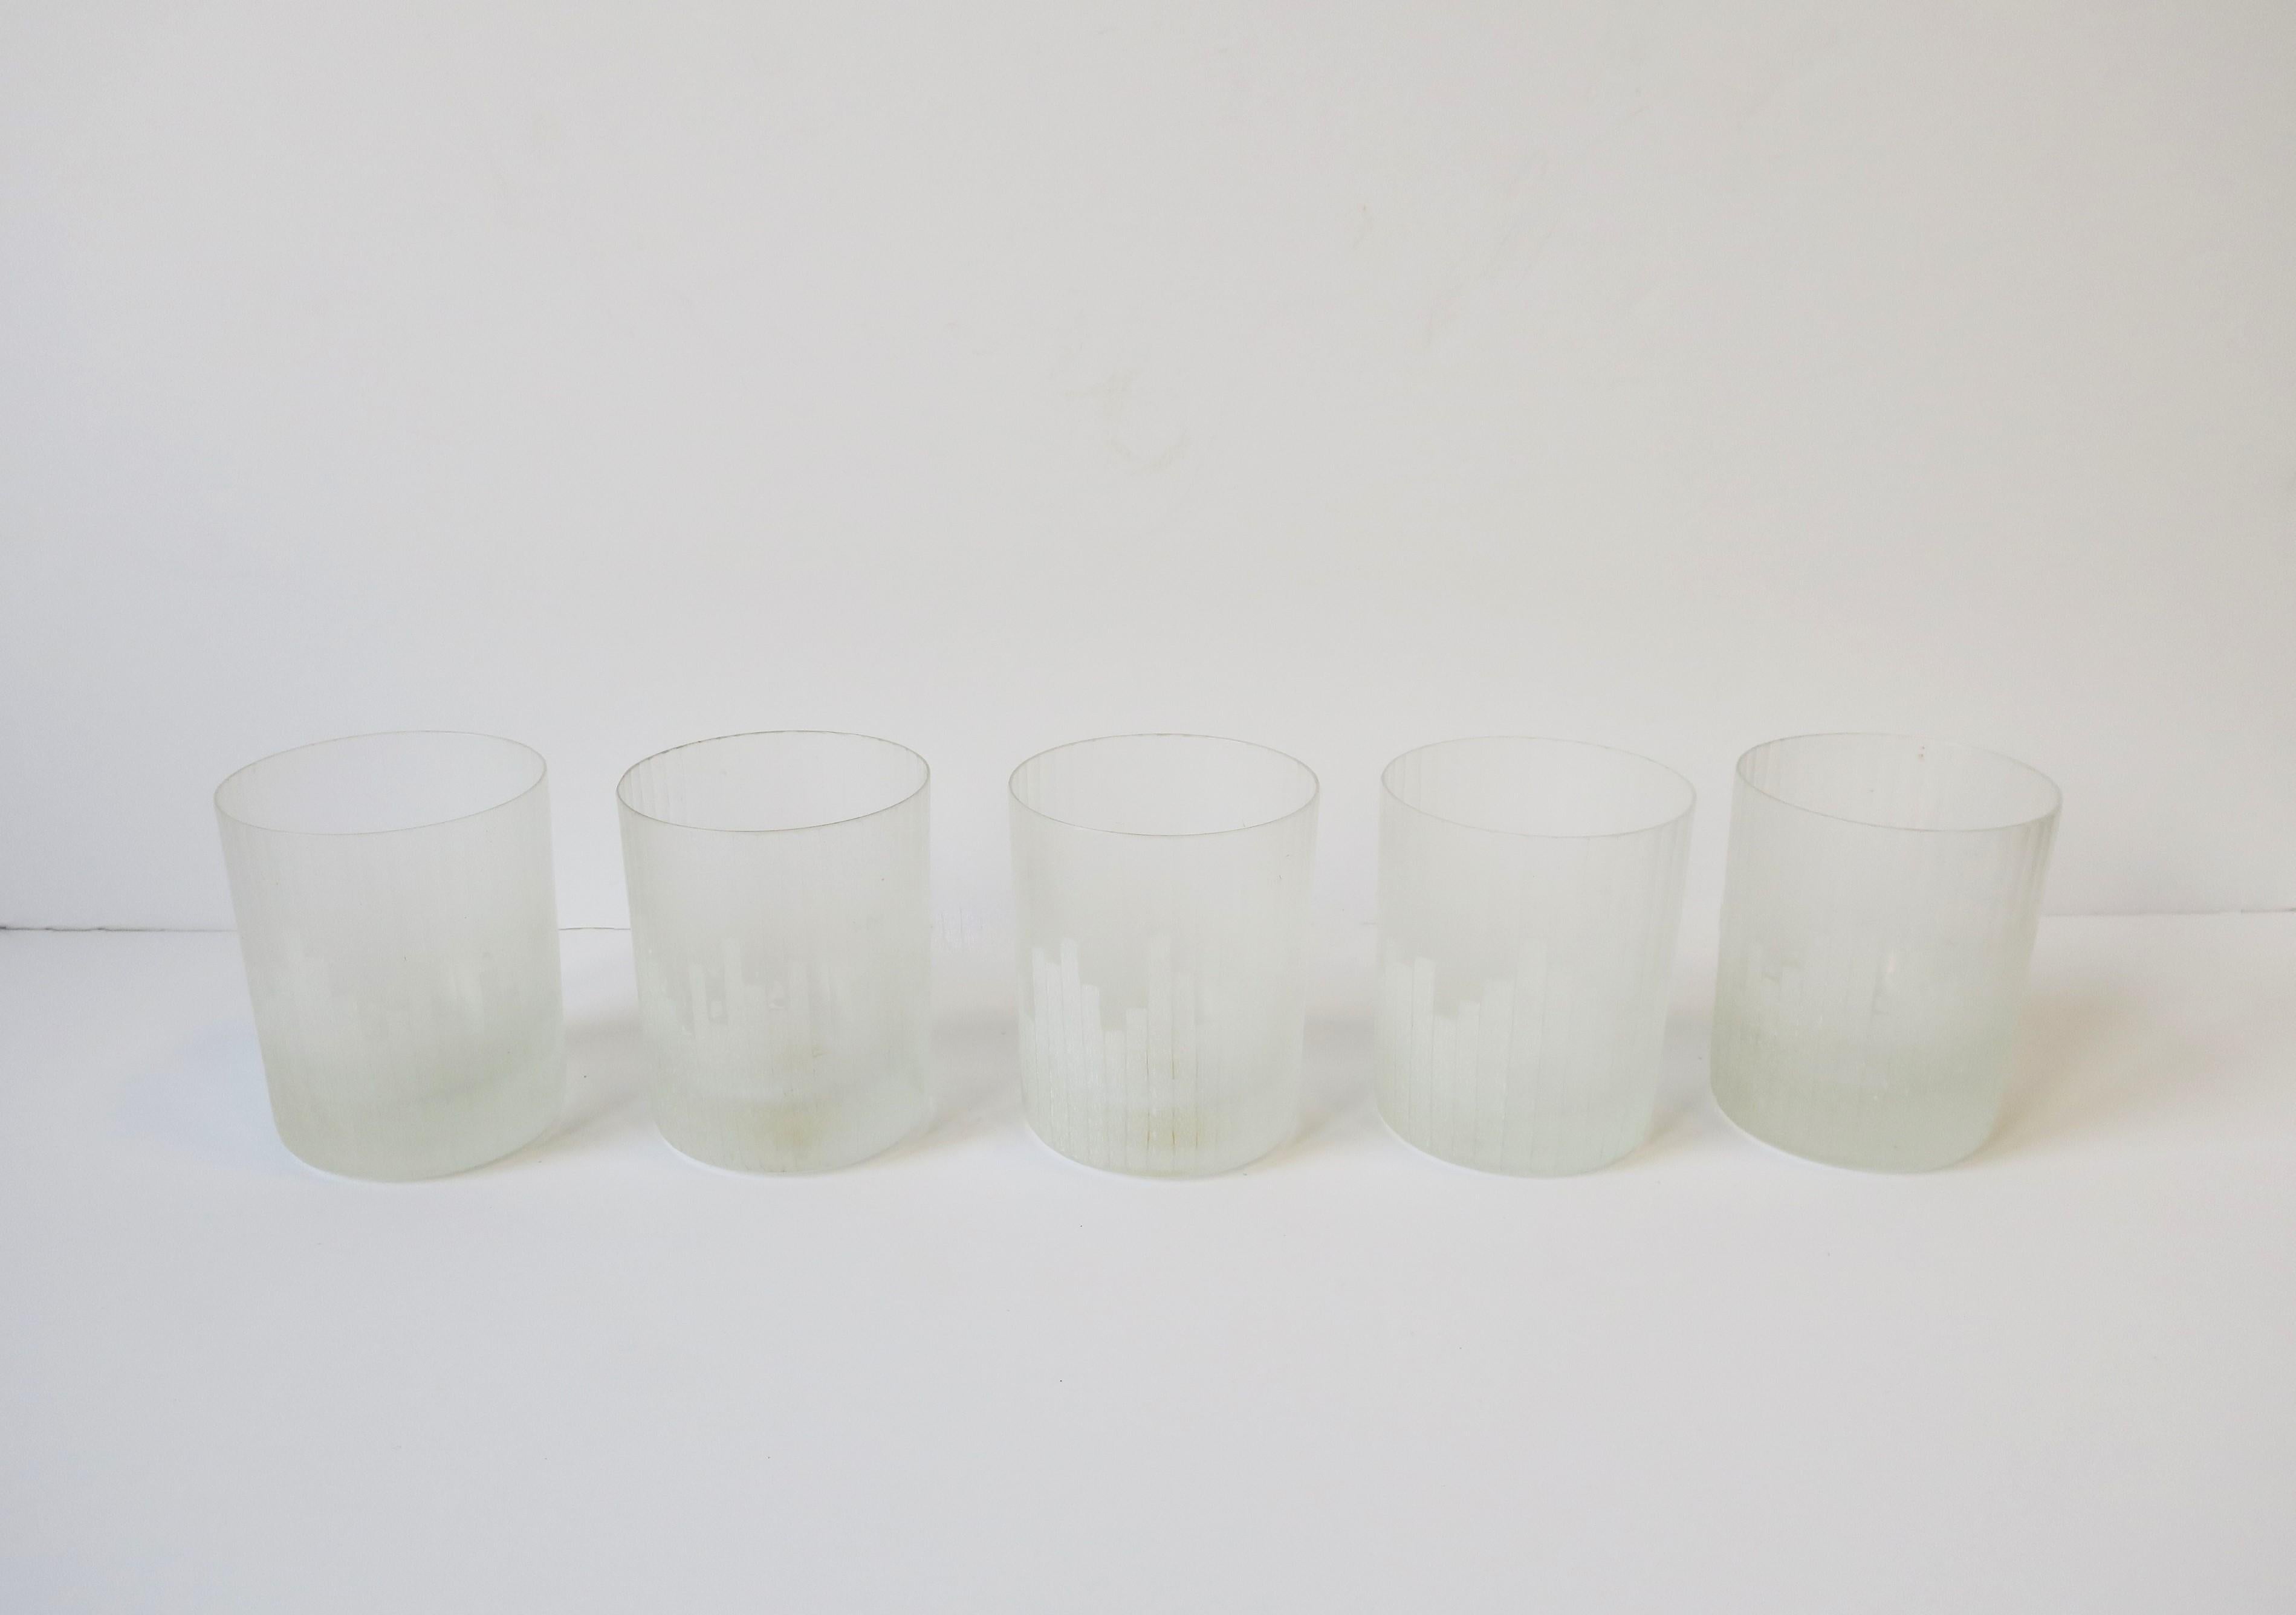 Ein sehr schönes und seltenes Set von fünf (5) '70s Modern cocktail rocks' Gläsern von Carl Rotter Lubeck, circa 1970er Jahre, Ende des 20. Jahrhunderts, Westdeutschland. Die Gläser haben ein Modern/Art-Deco-Stadtbilddesign auf einem mattweißen Glas